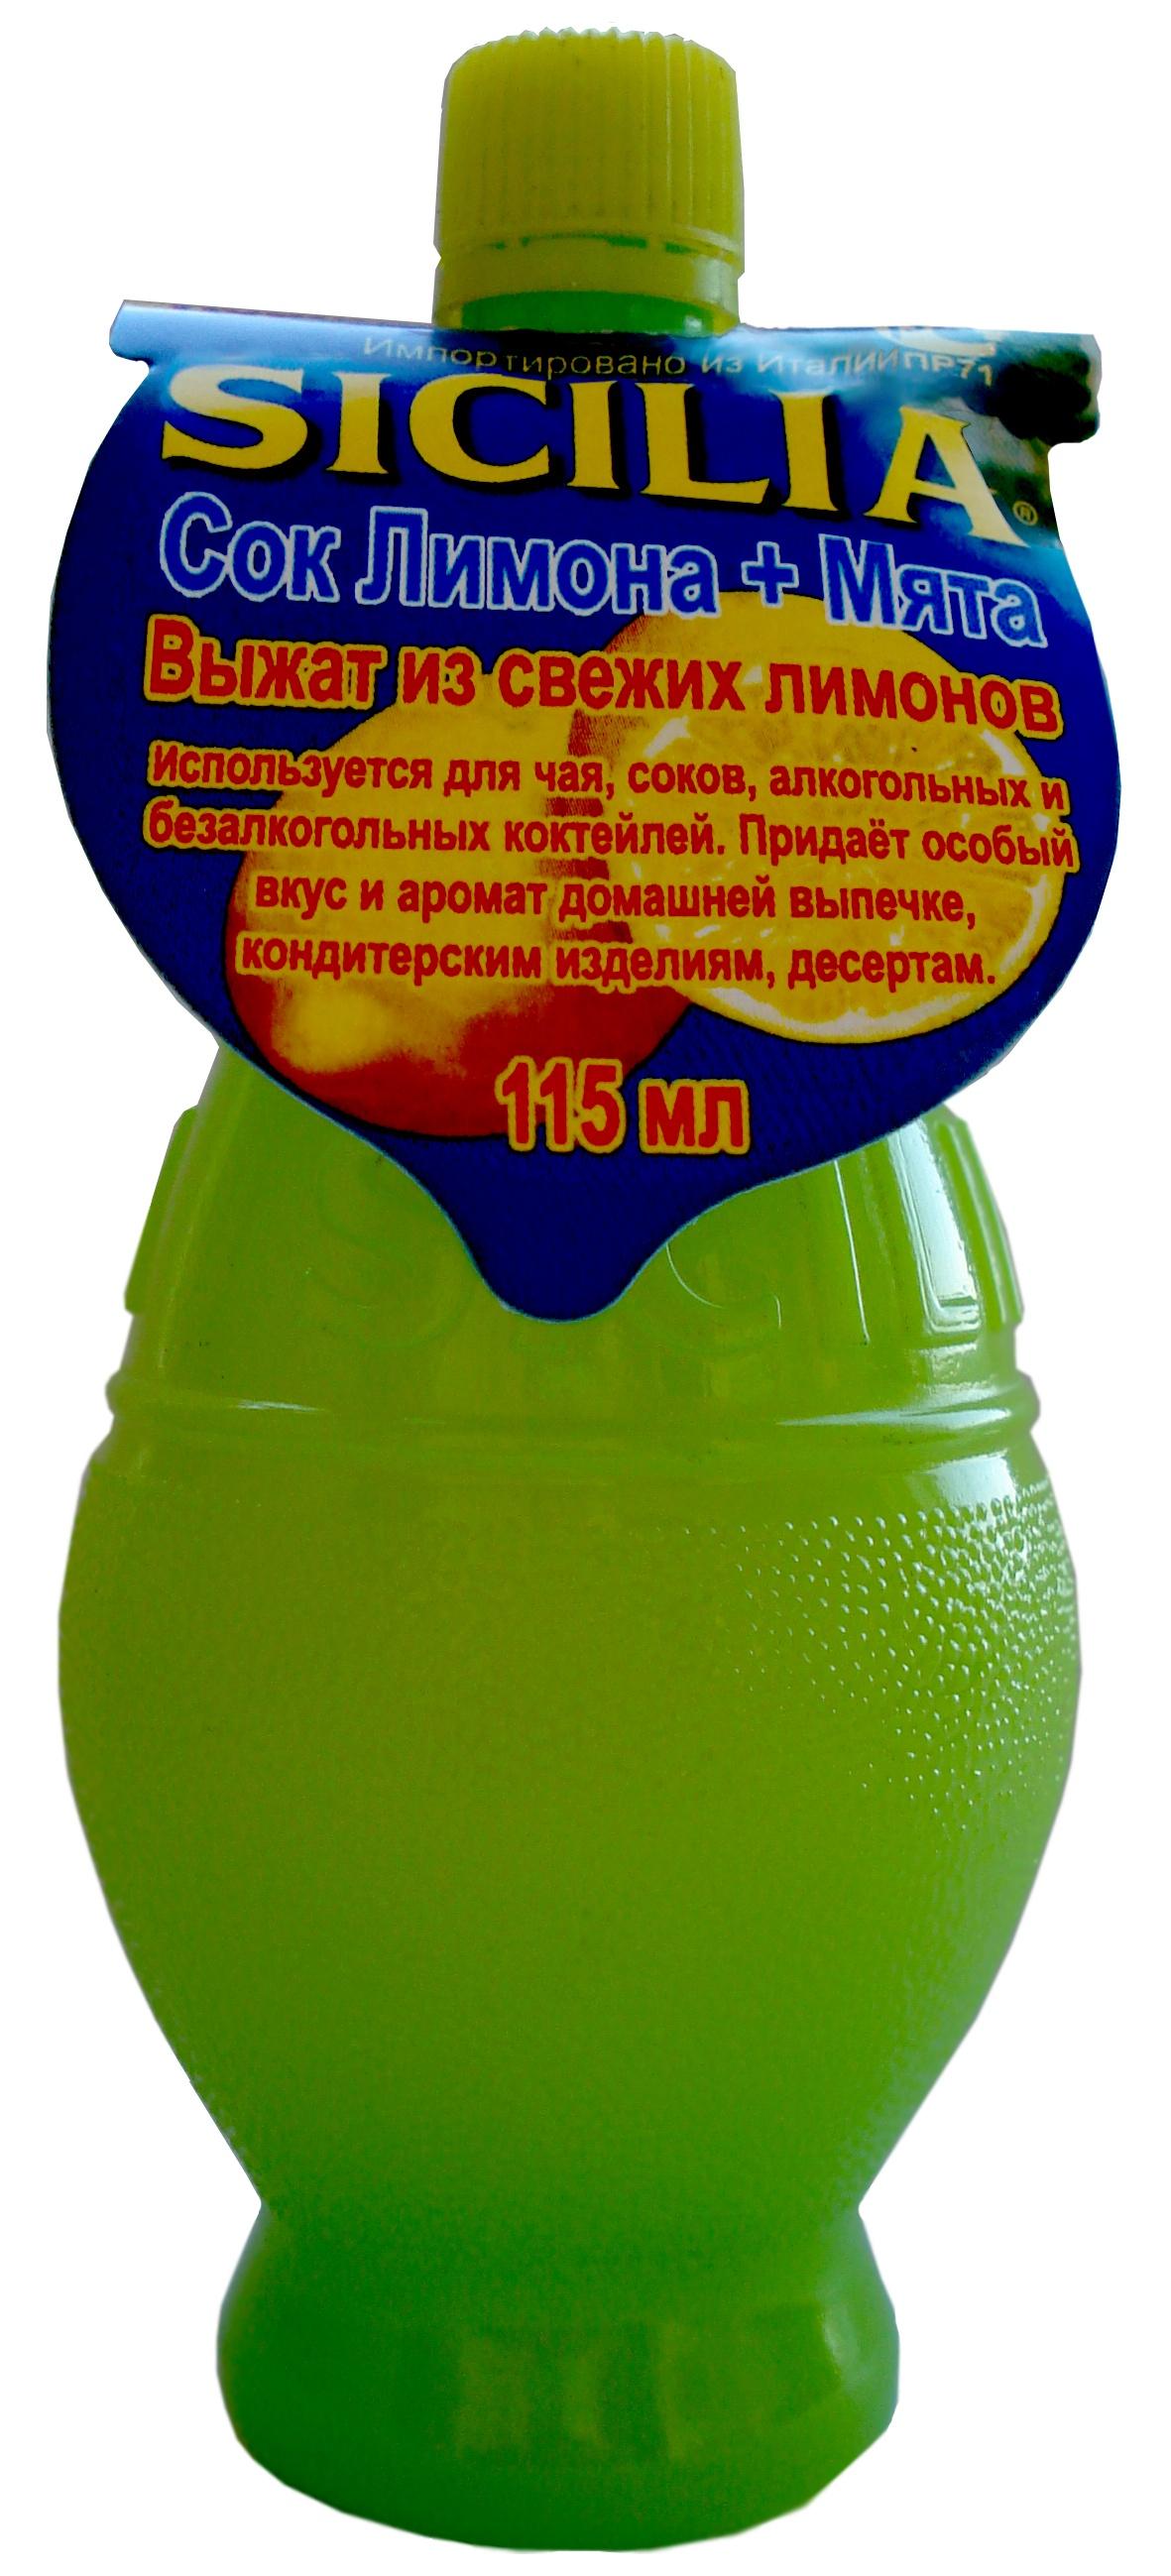 Сок лимонный Sicilia с мятой 115 мл., ПЭТ